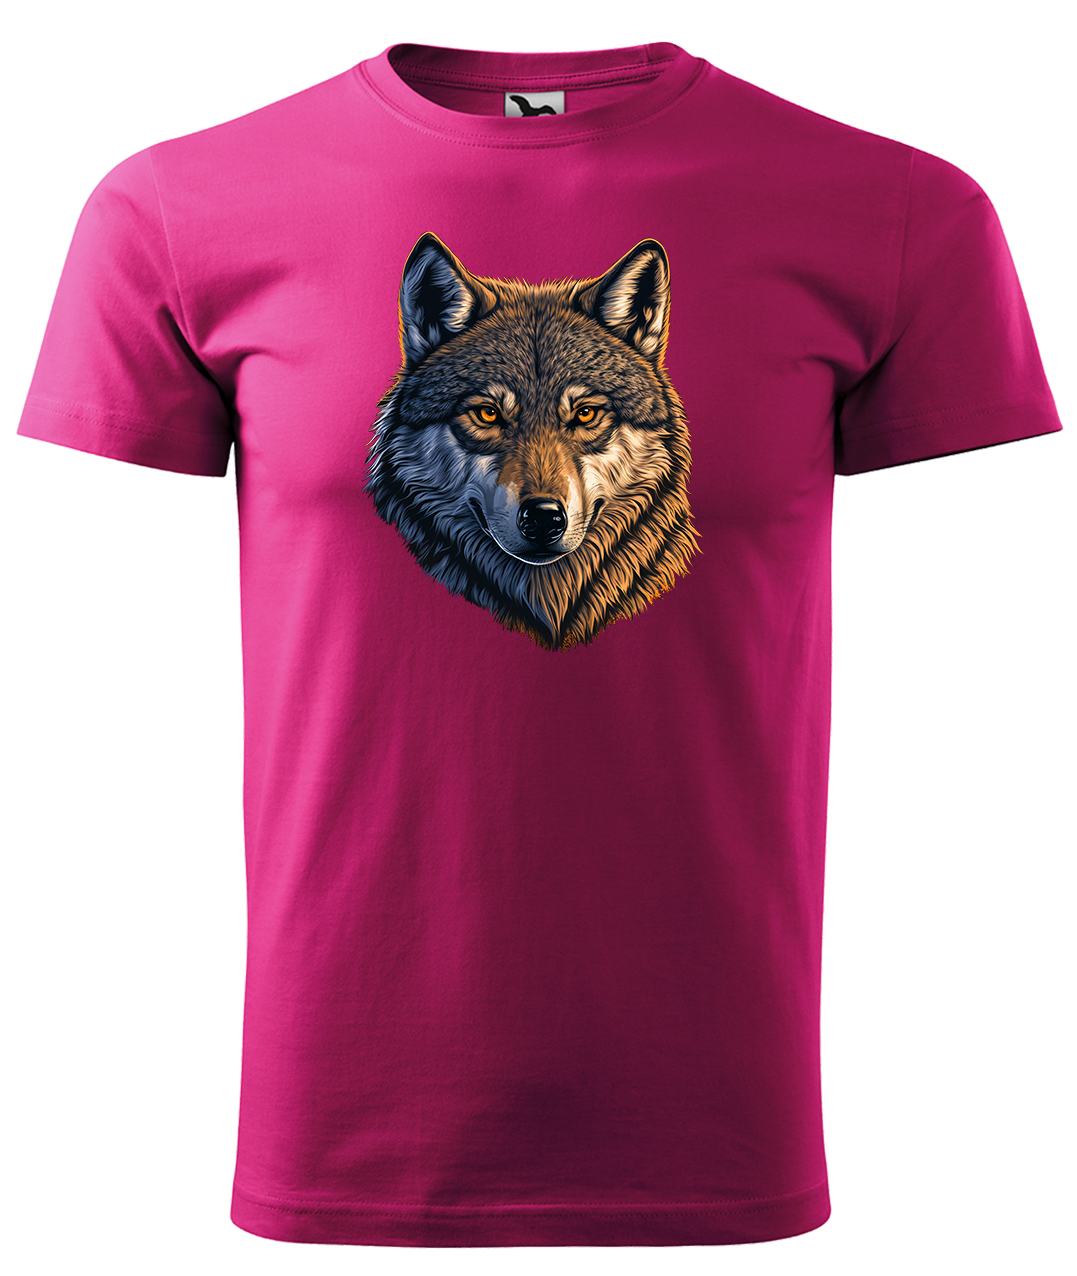 Dětské tričko s vlkem - Hlava vlka Velikost: 8 let / 134 cm, Barva: Malinová (63), Délka rukávu: Krátký rukáv